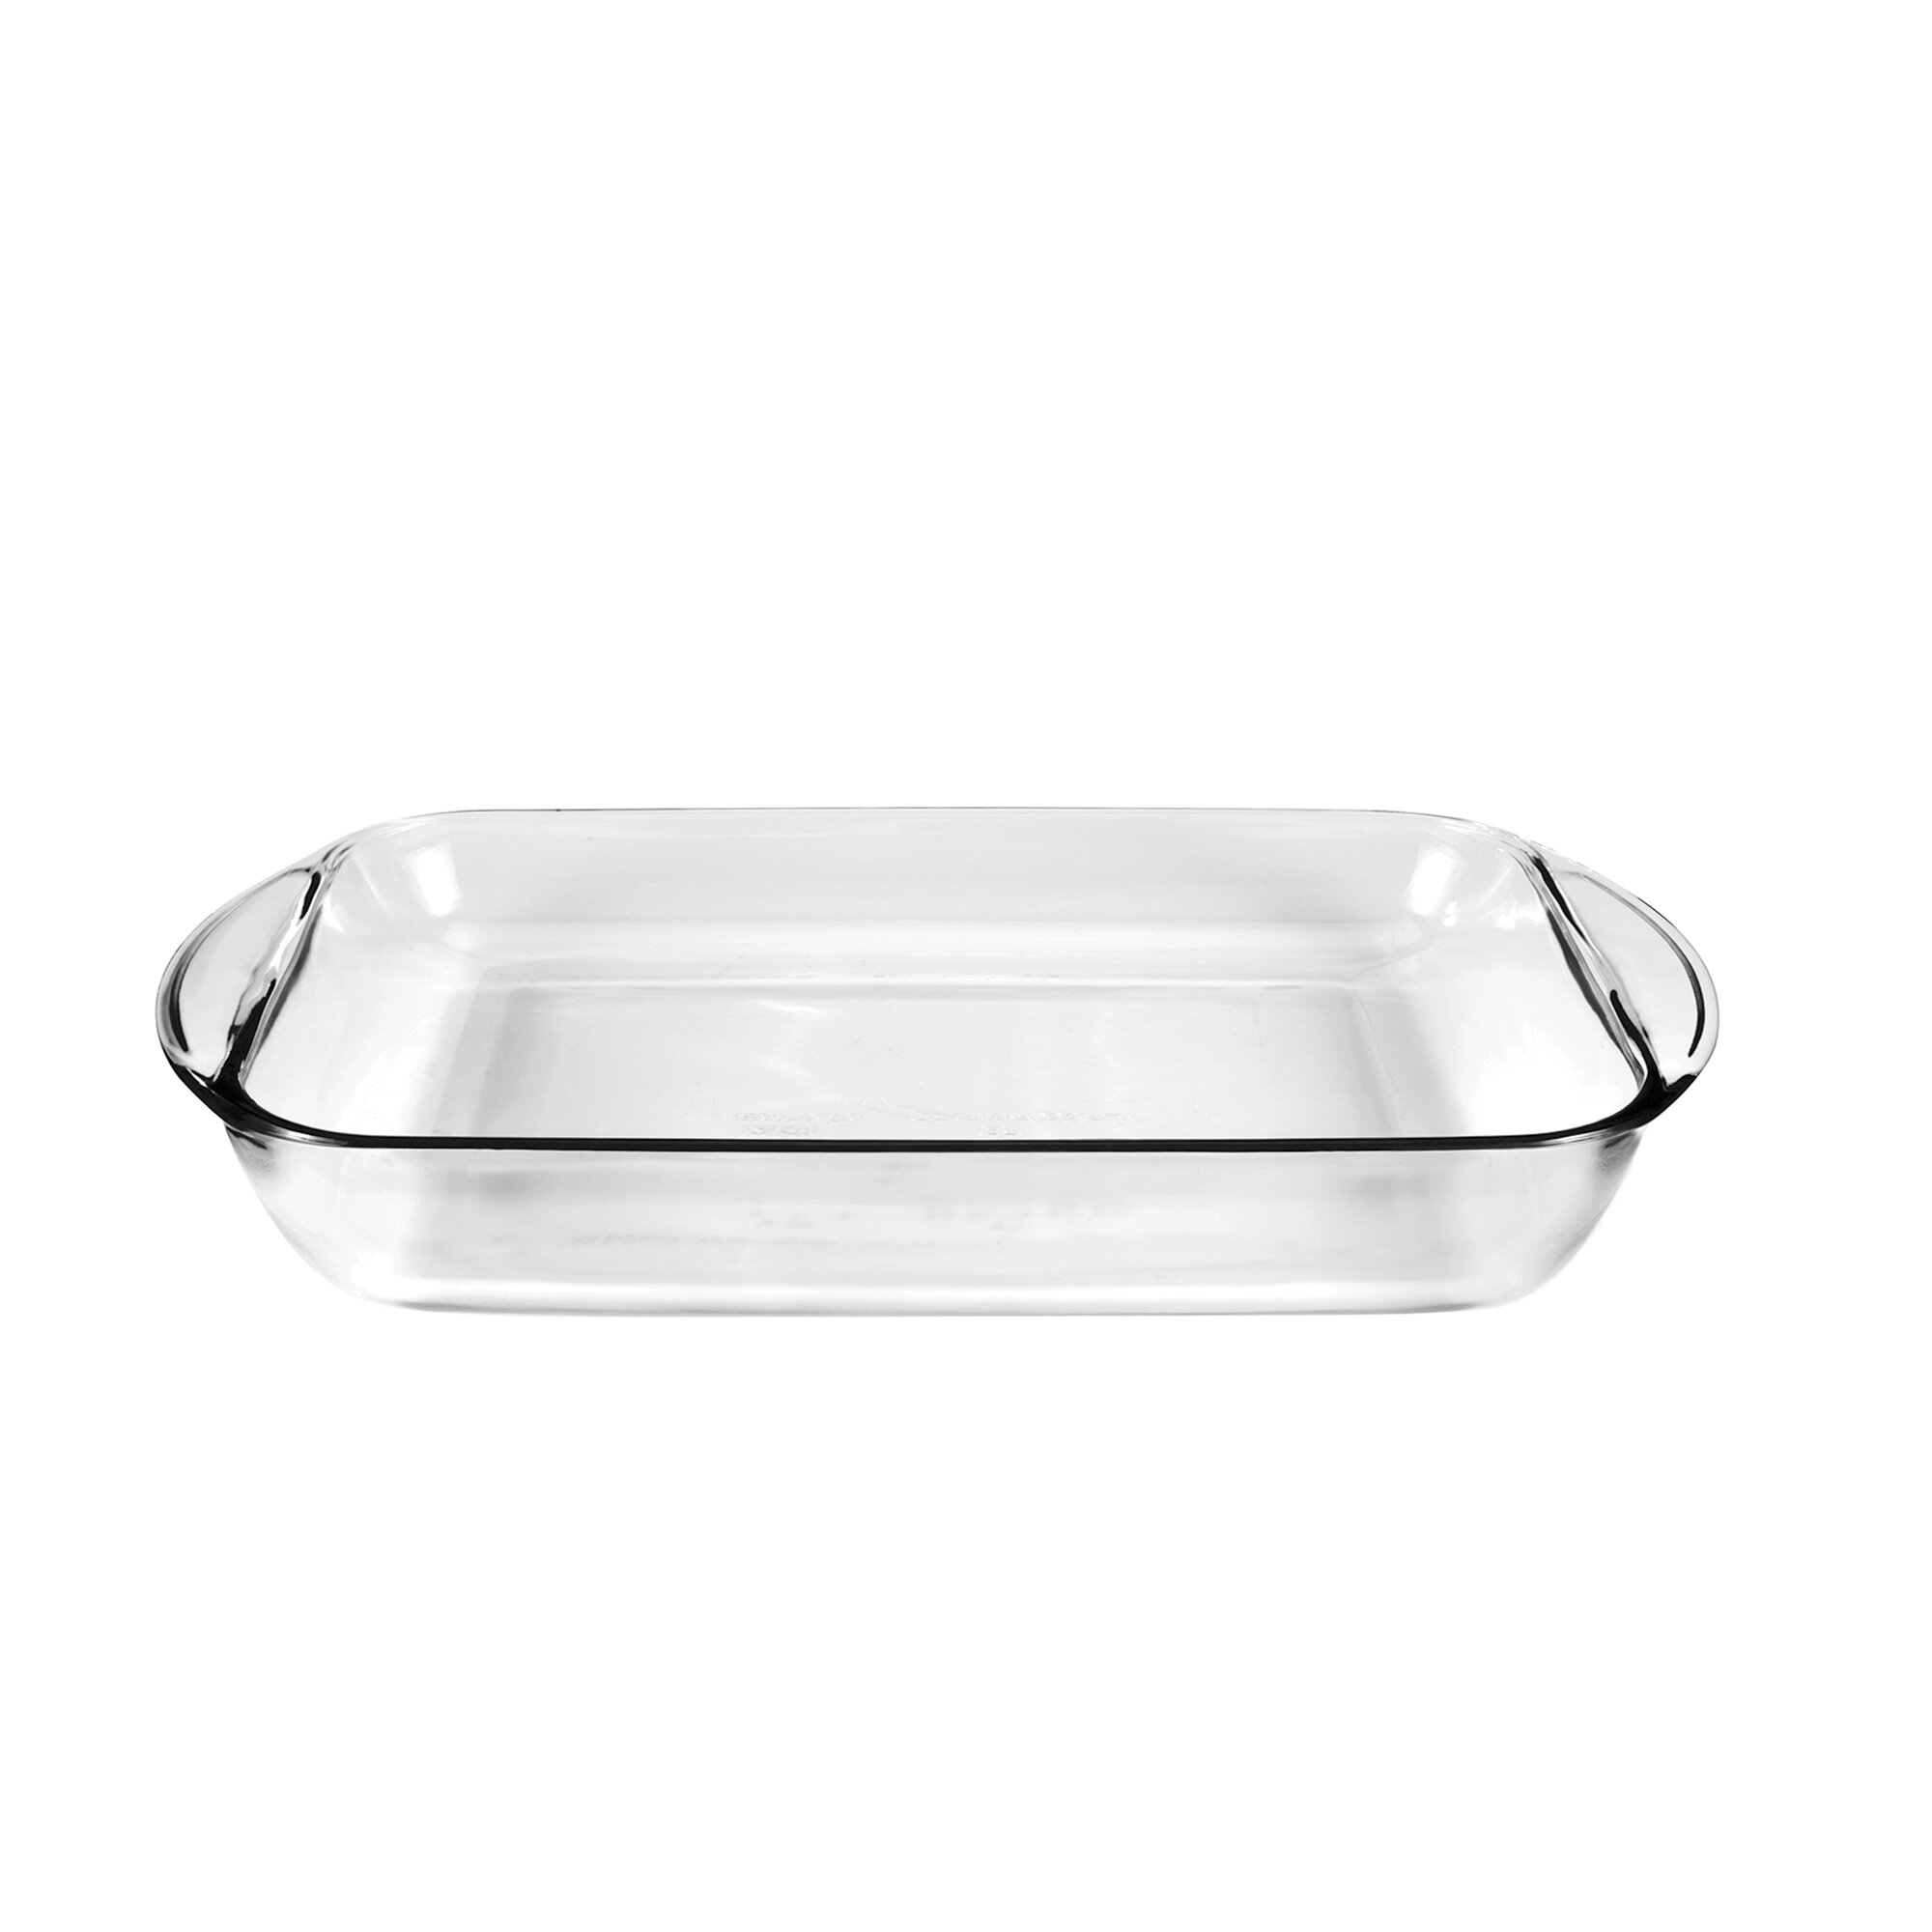 https://assets.wfcdn.com/im/12931241/compr-r85/3660/36603313/alta-4-qt-glass-rectangular-bake-dish.jpg